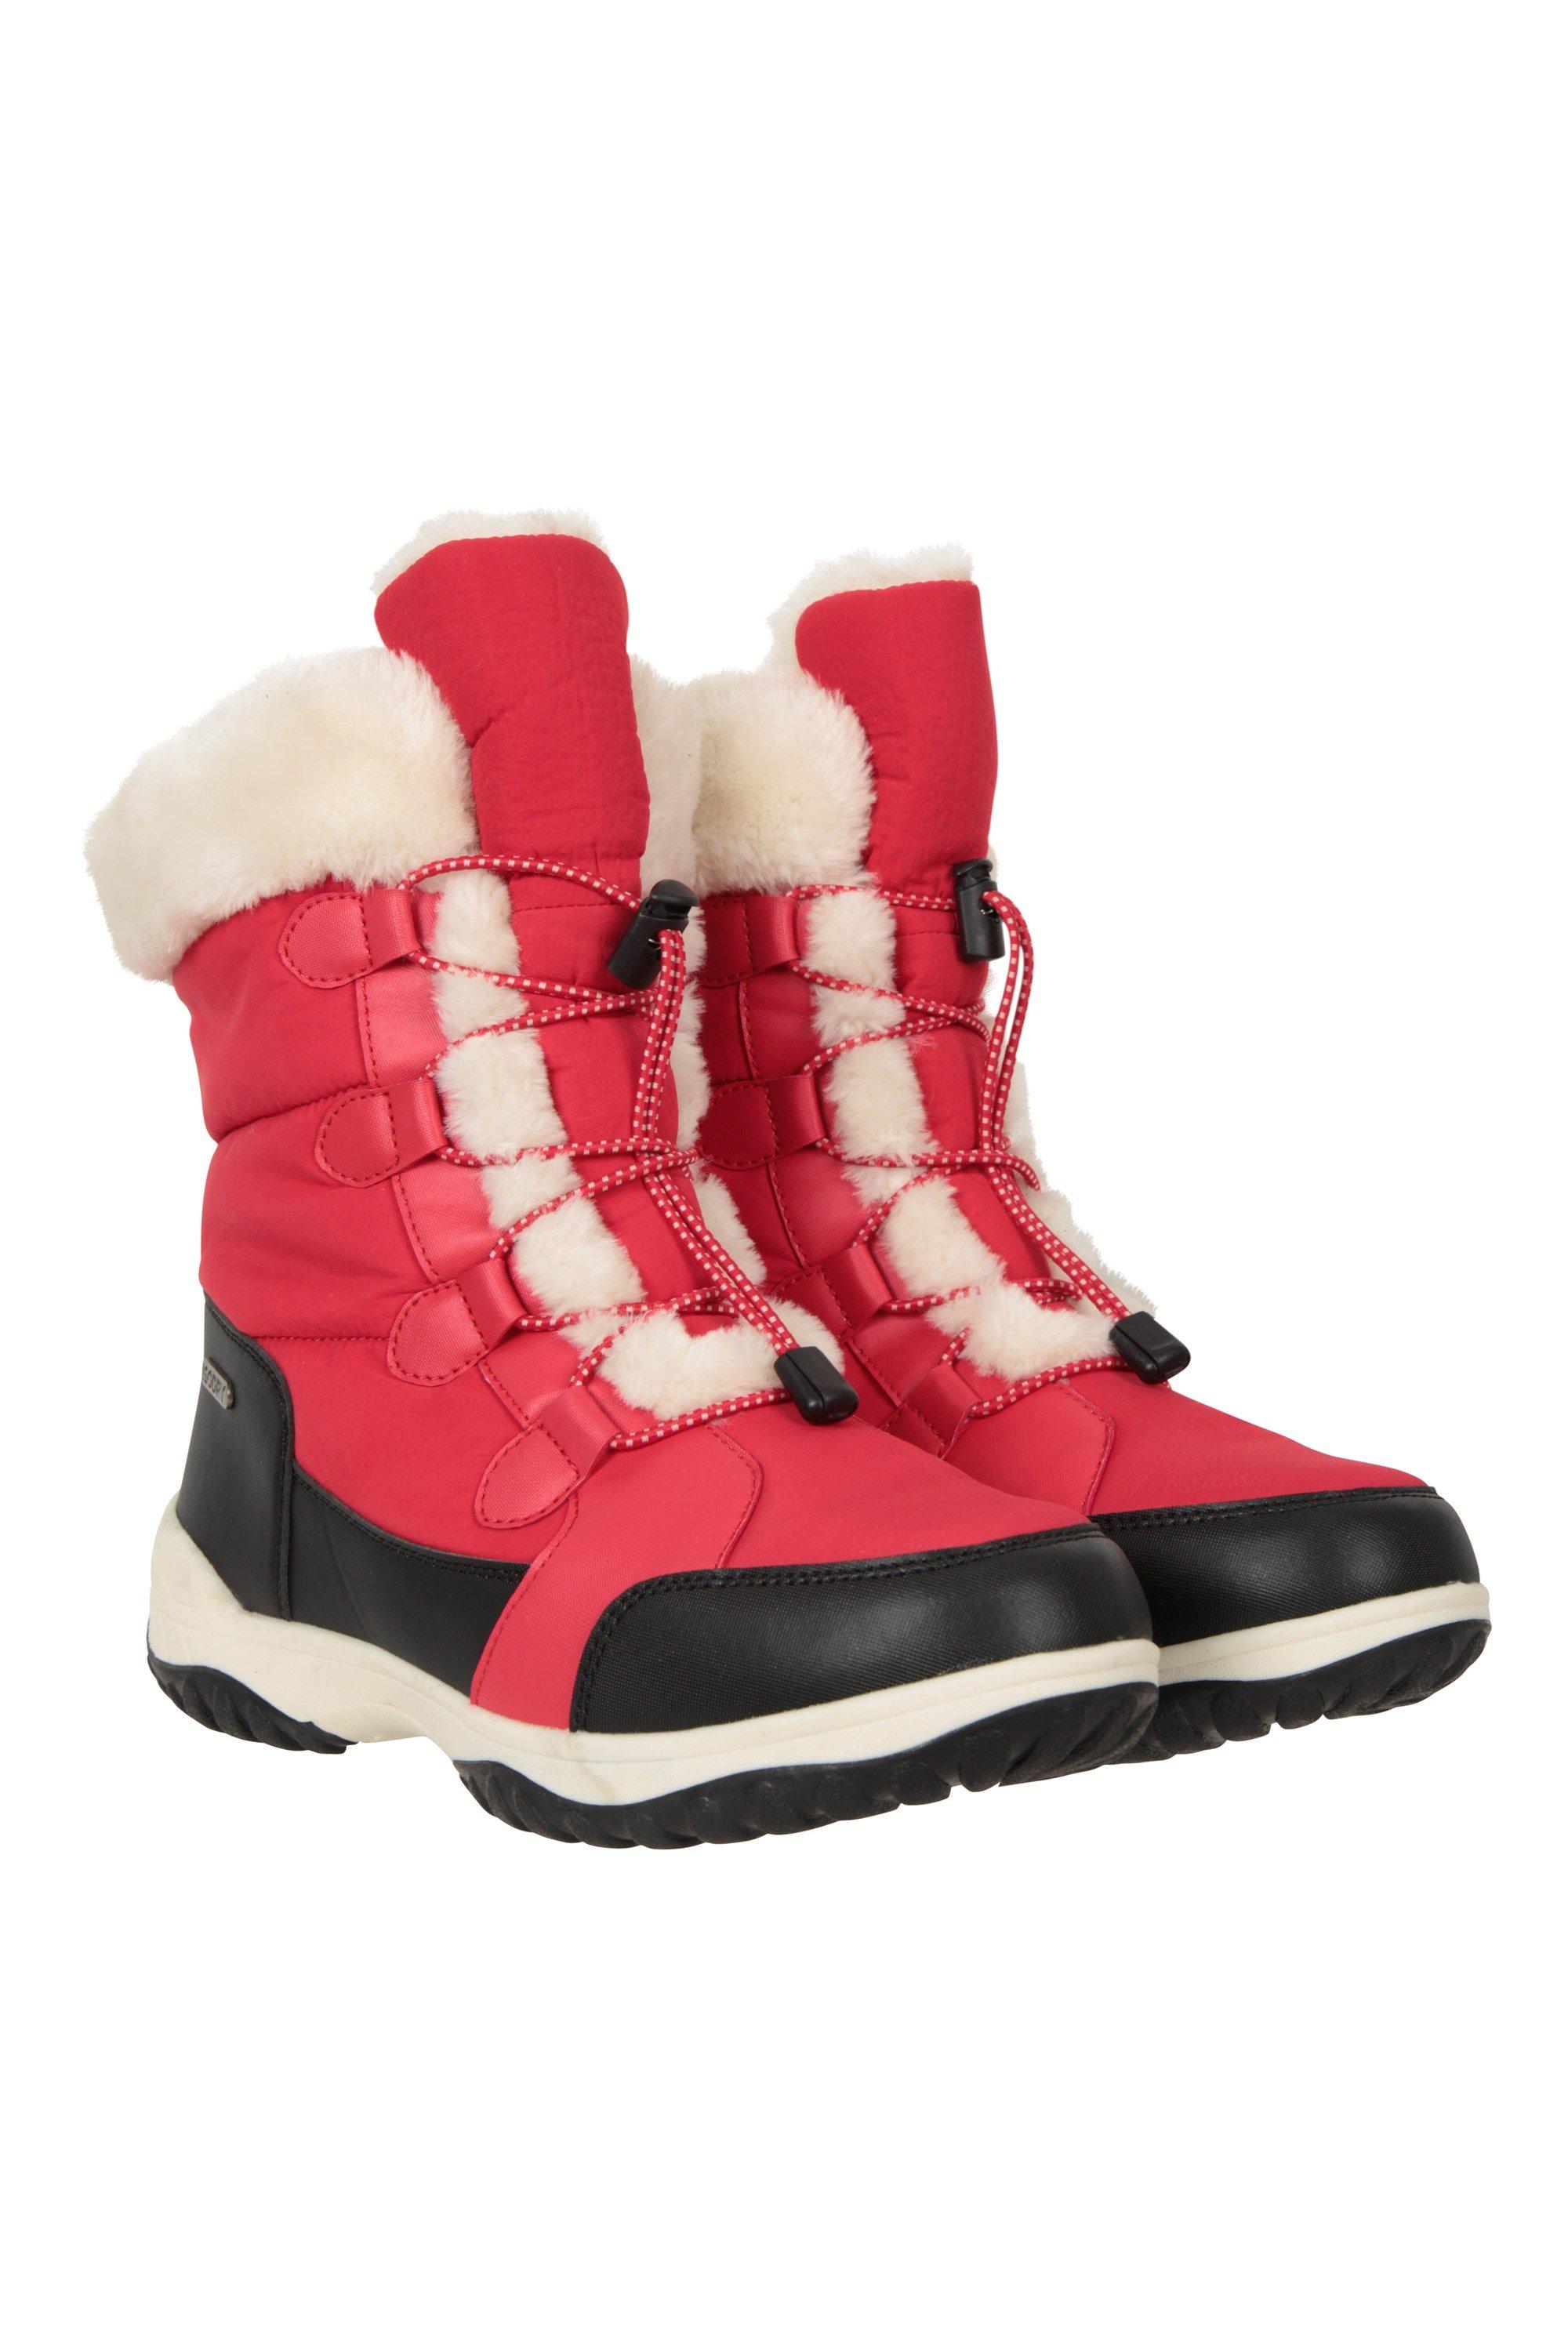 Snowflake Boots Снегозащитные адаптивные лыжные ботинки Mountain Warehouse, красный children snow boots girl